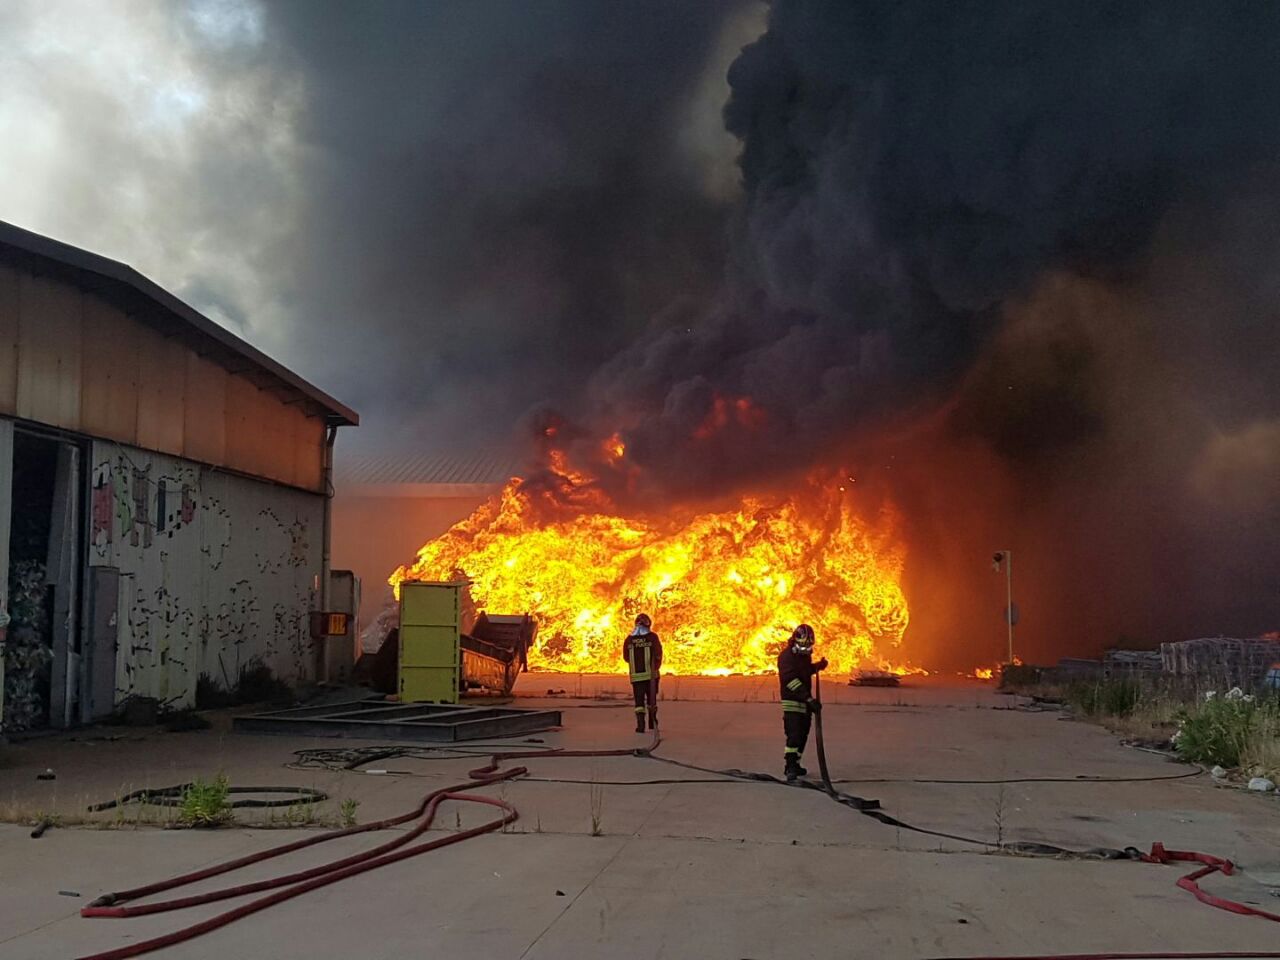 Avellino| Prevenzione incendi, prima ordinanza di Festa: multe fino a oltre 10mila euro